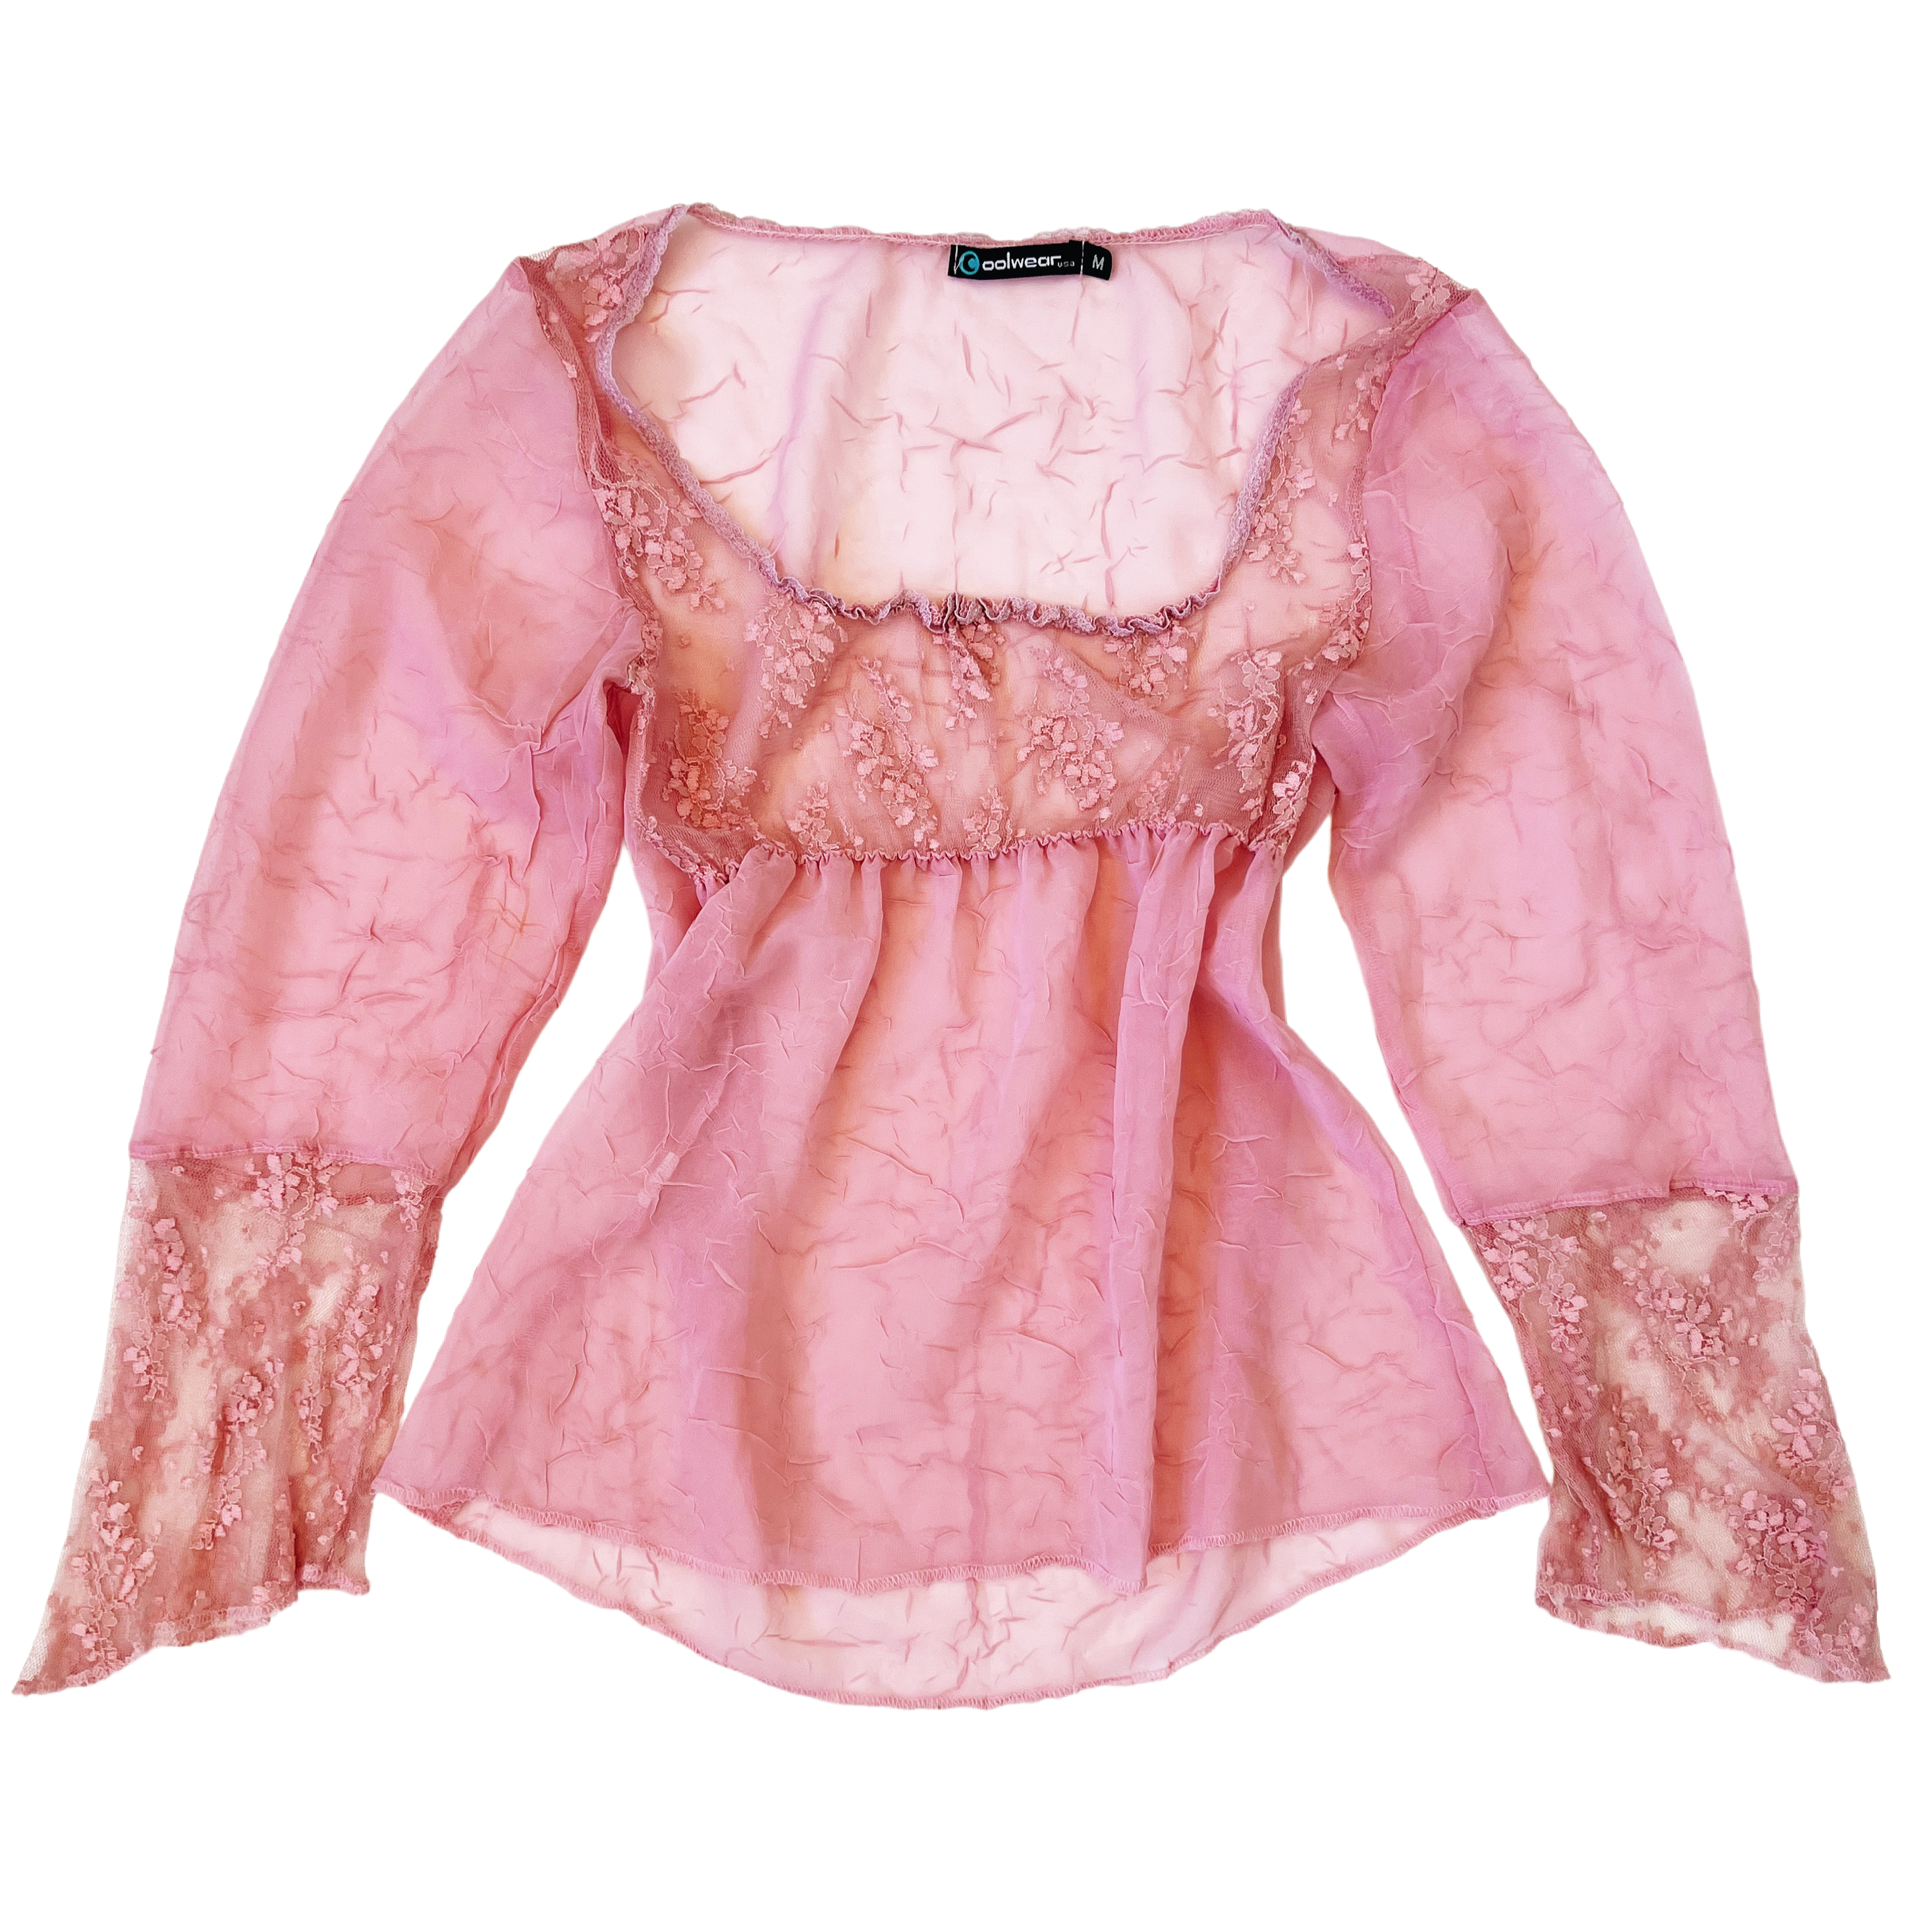 Vintage Sheer Pink Lacy Top (M)